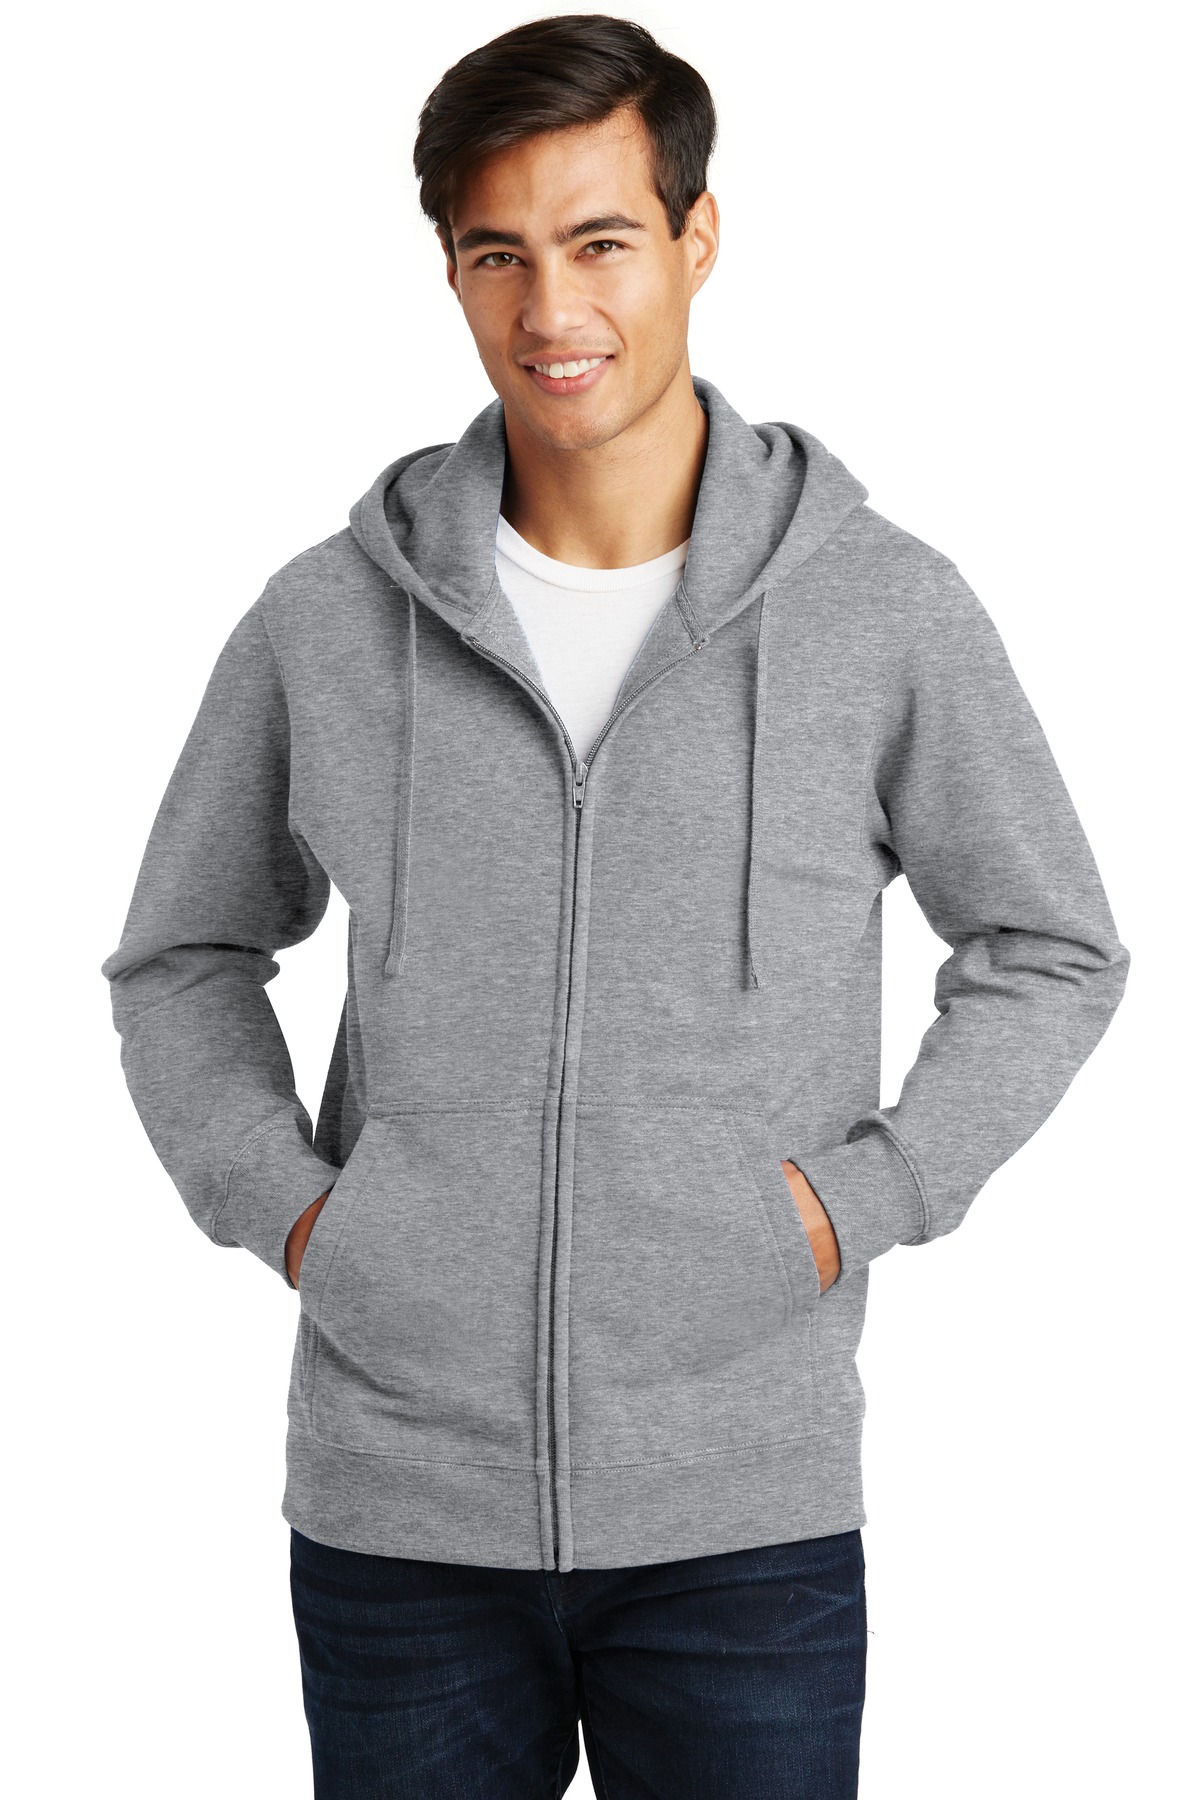 Port & Company Fan Favorite Fleece Full-Zip Hooded Sweatshirt - PC850ZH